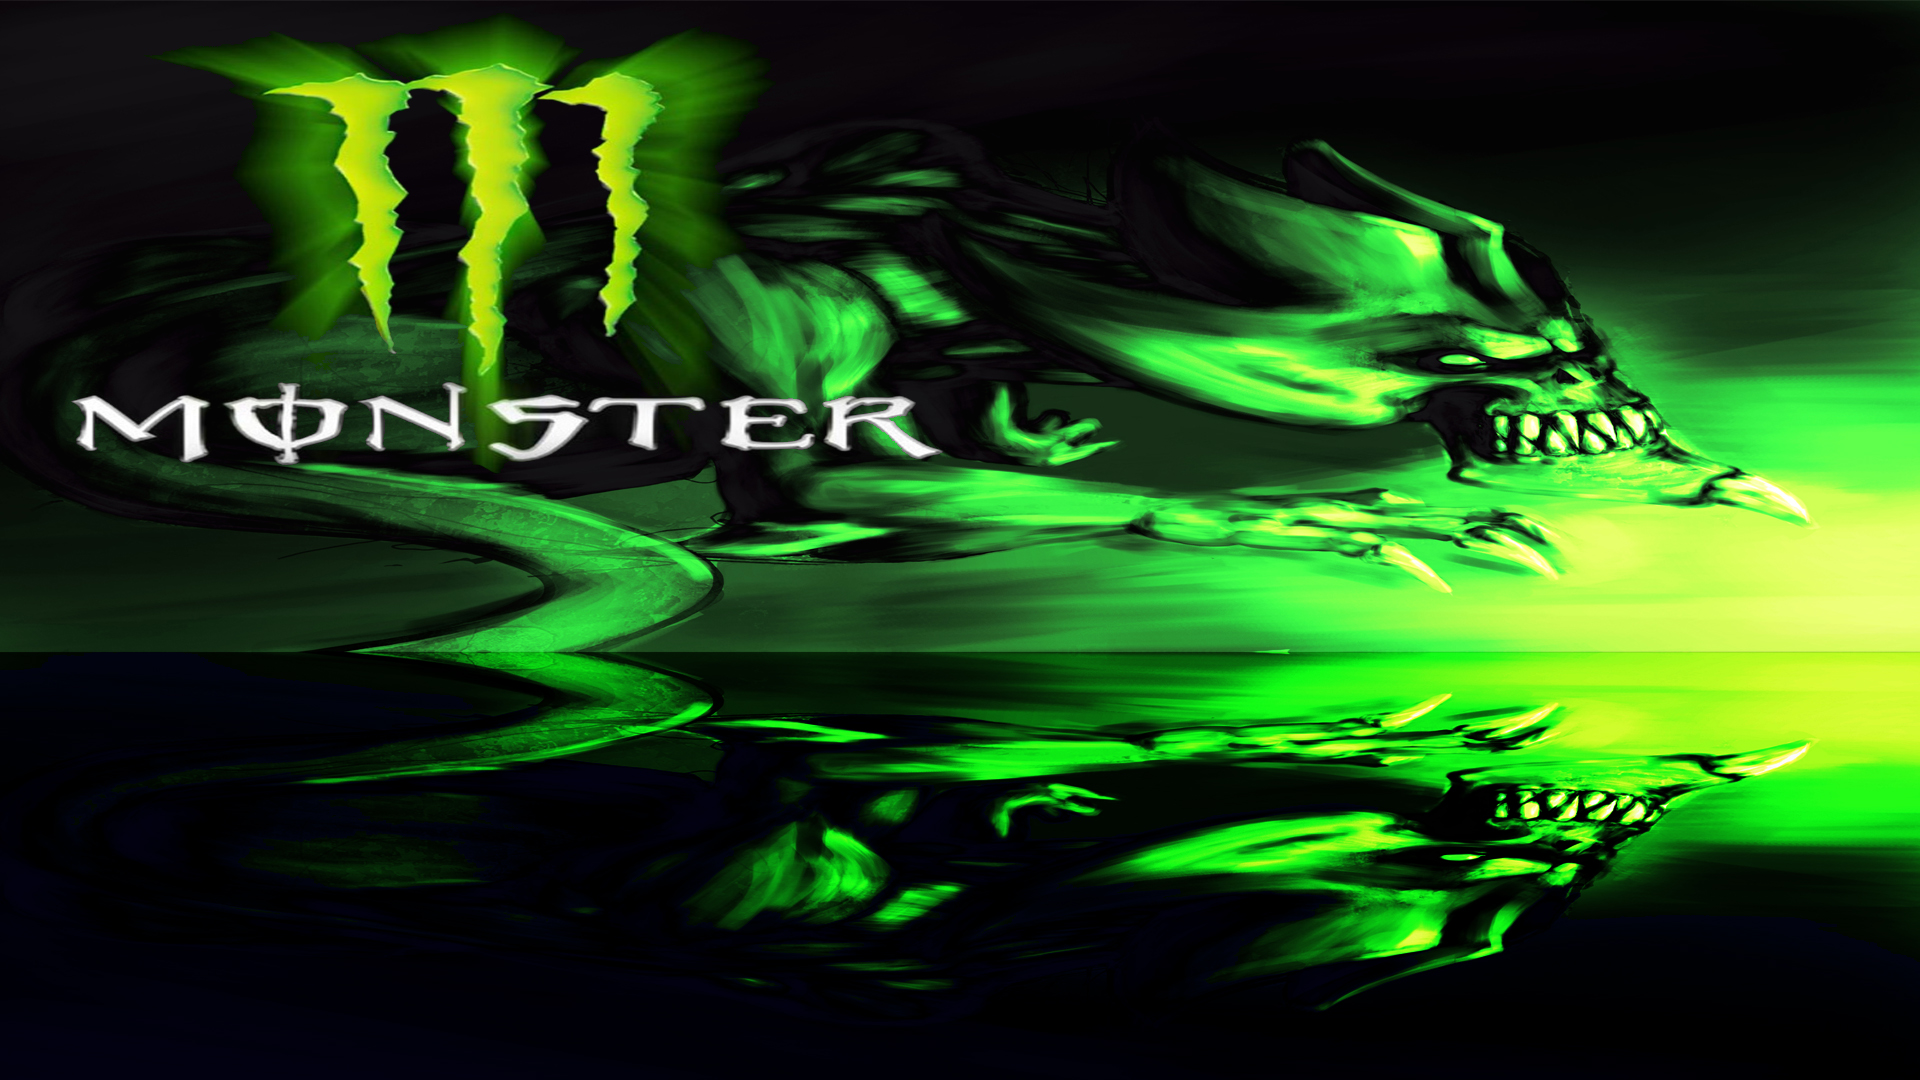 monster energy xbox 360 background wallpaper   ForWallpapercom